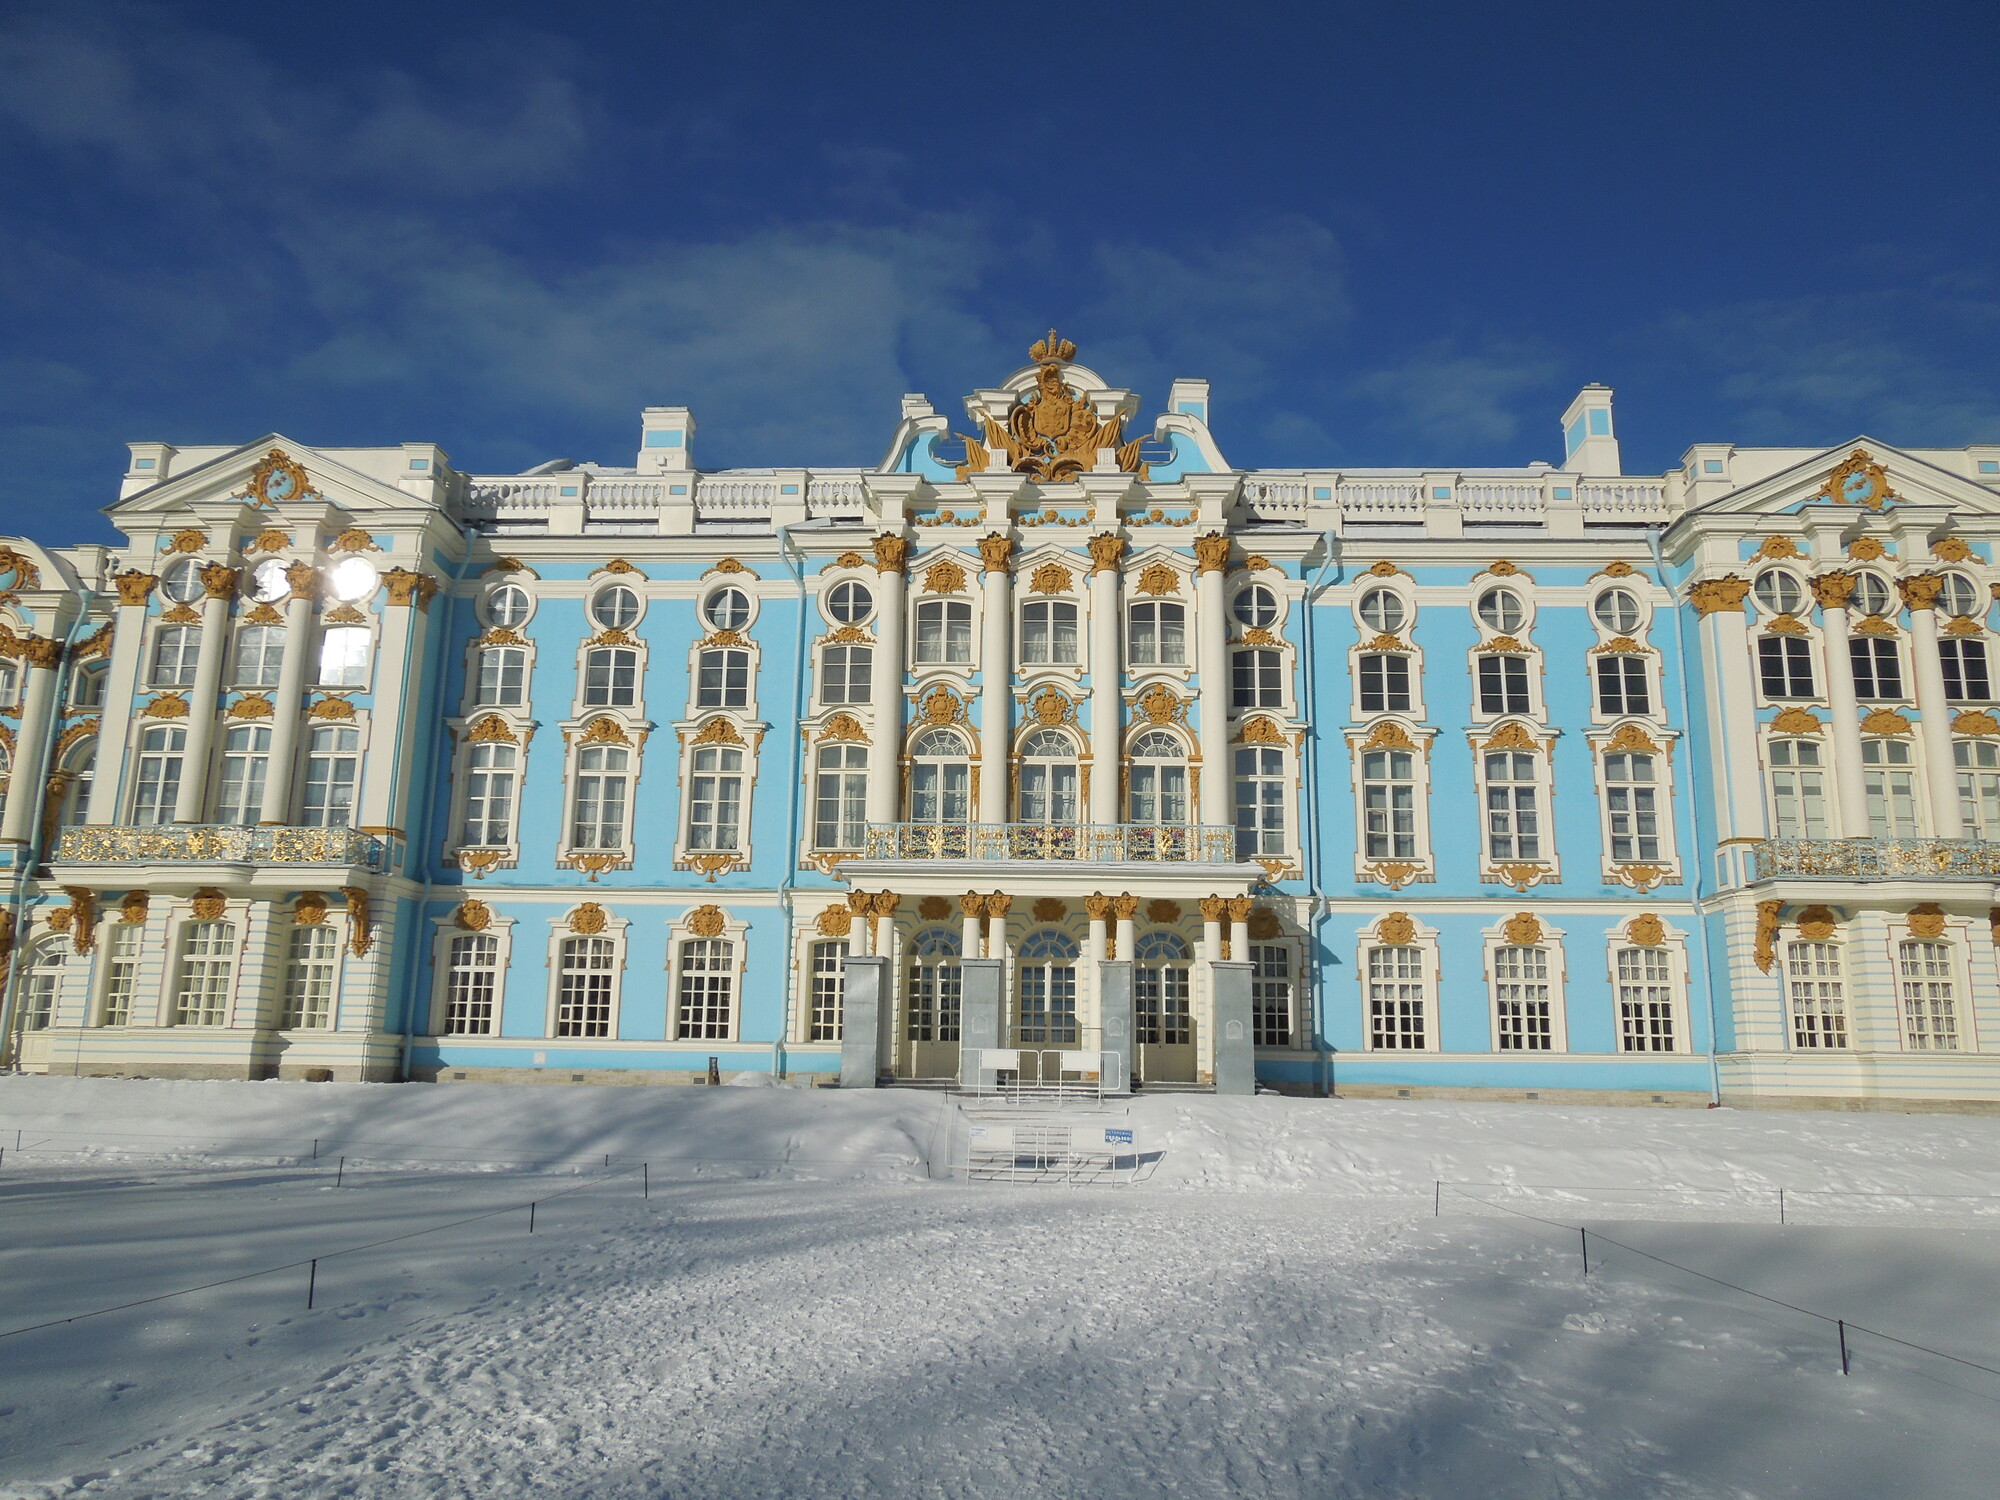 Санкт-Петербург и окрестности с Ташей Строгой: дворцы, зима и мода